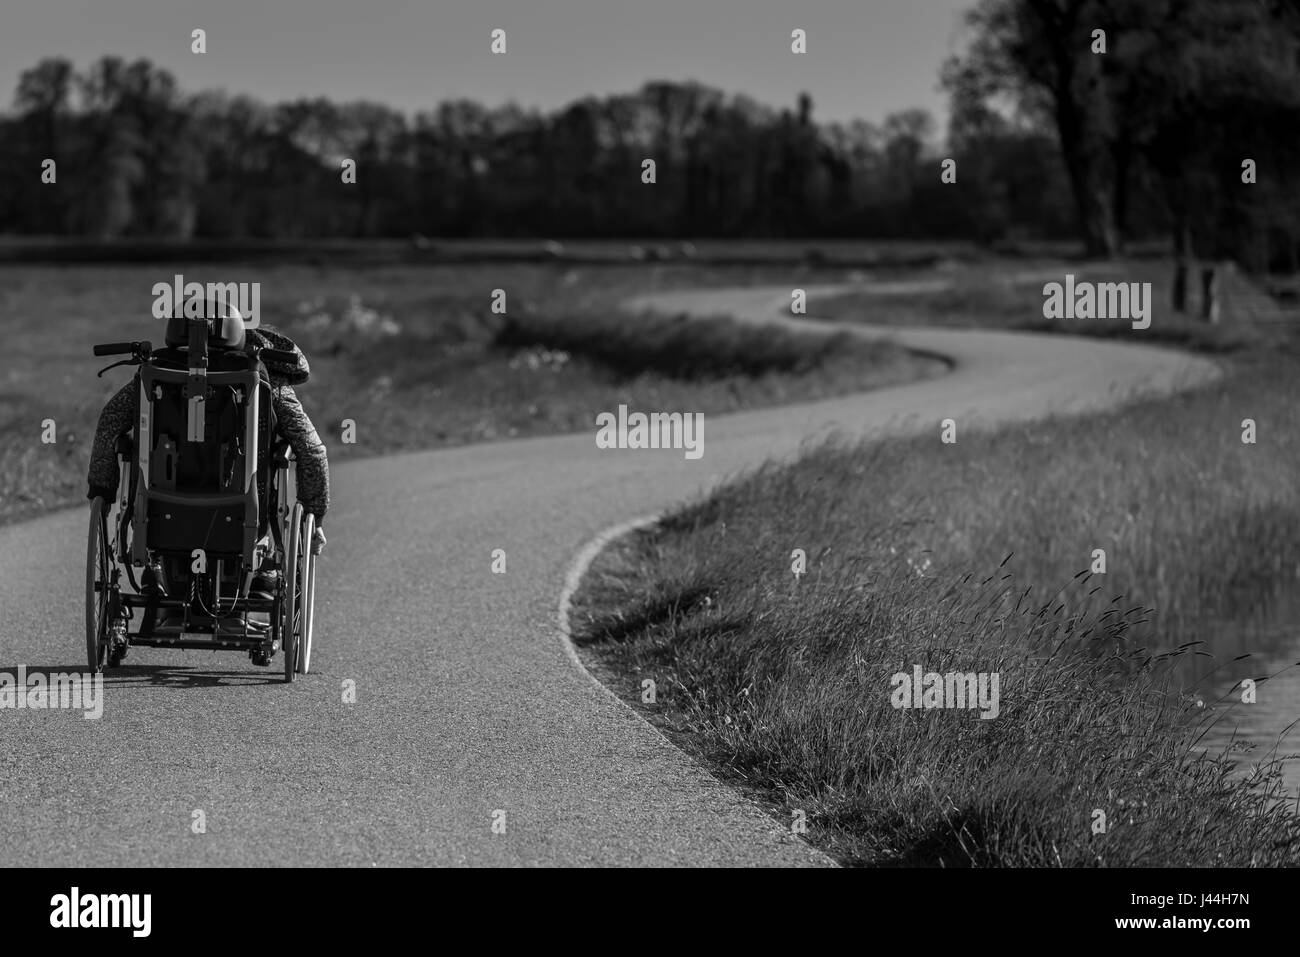 Eine behinderte Person in einem Rollstuhl alleine auf einer kurvenreichen Straße Stockfoto